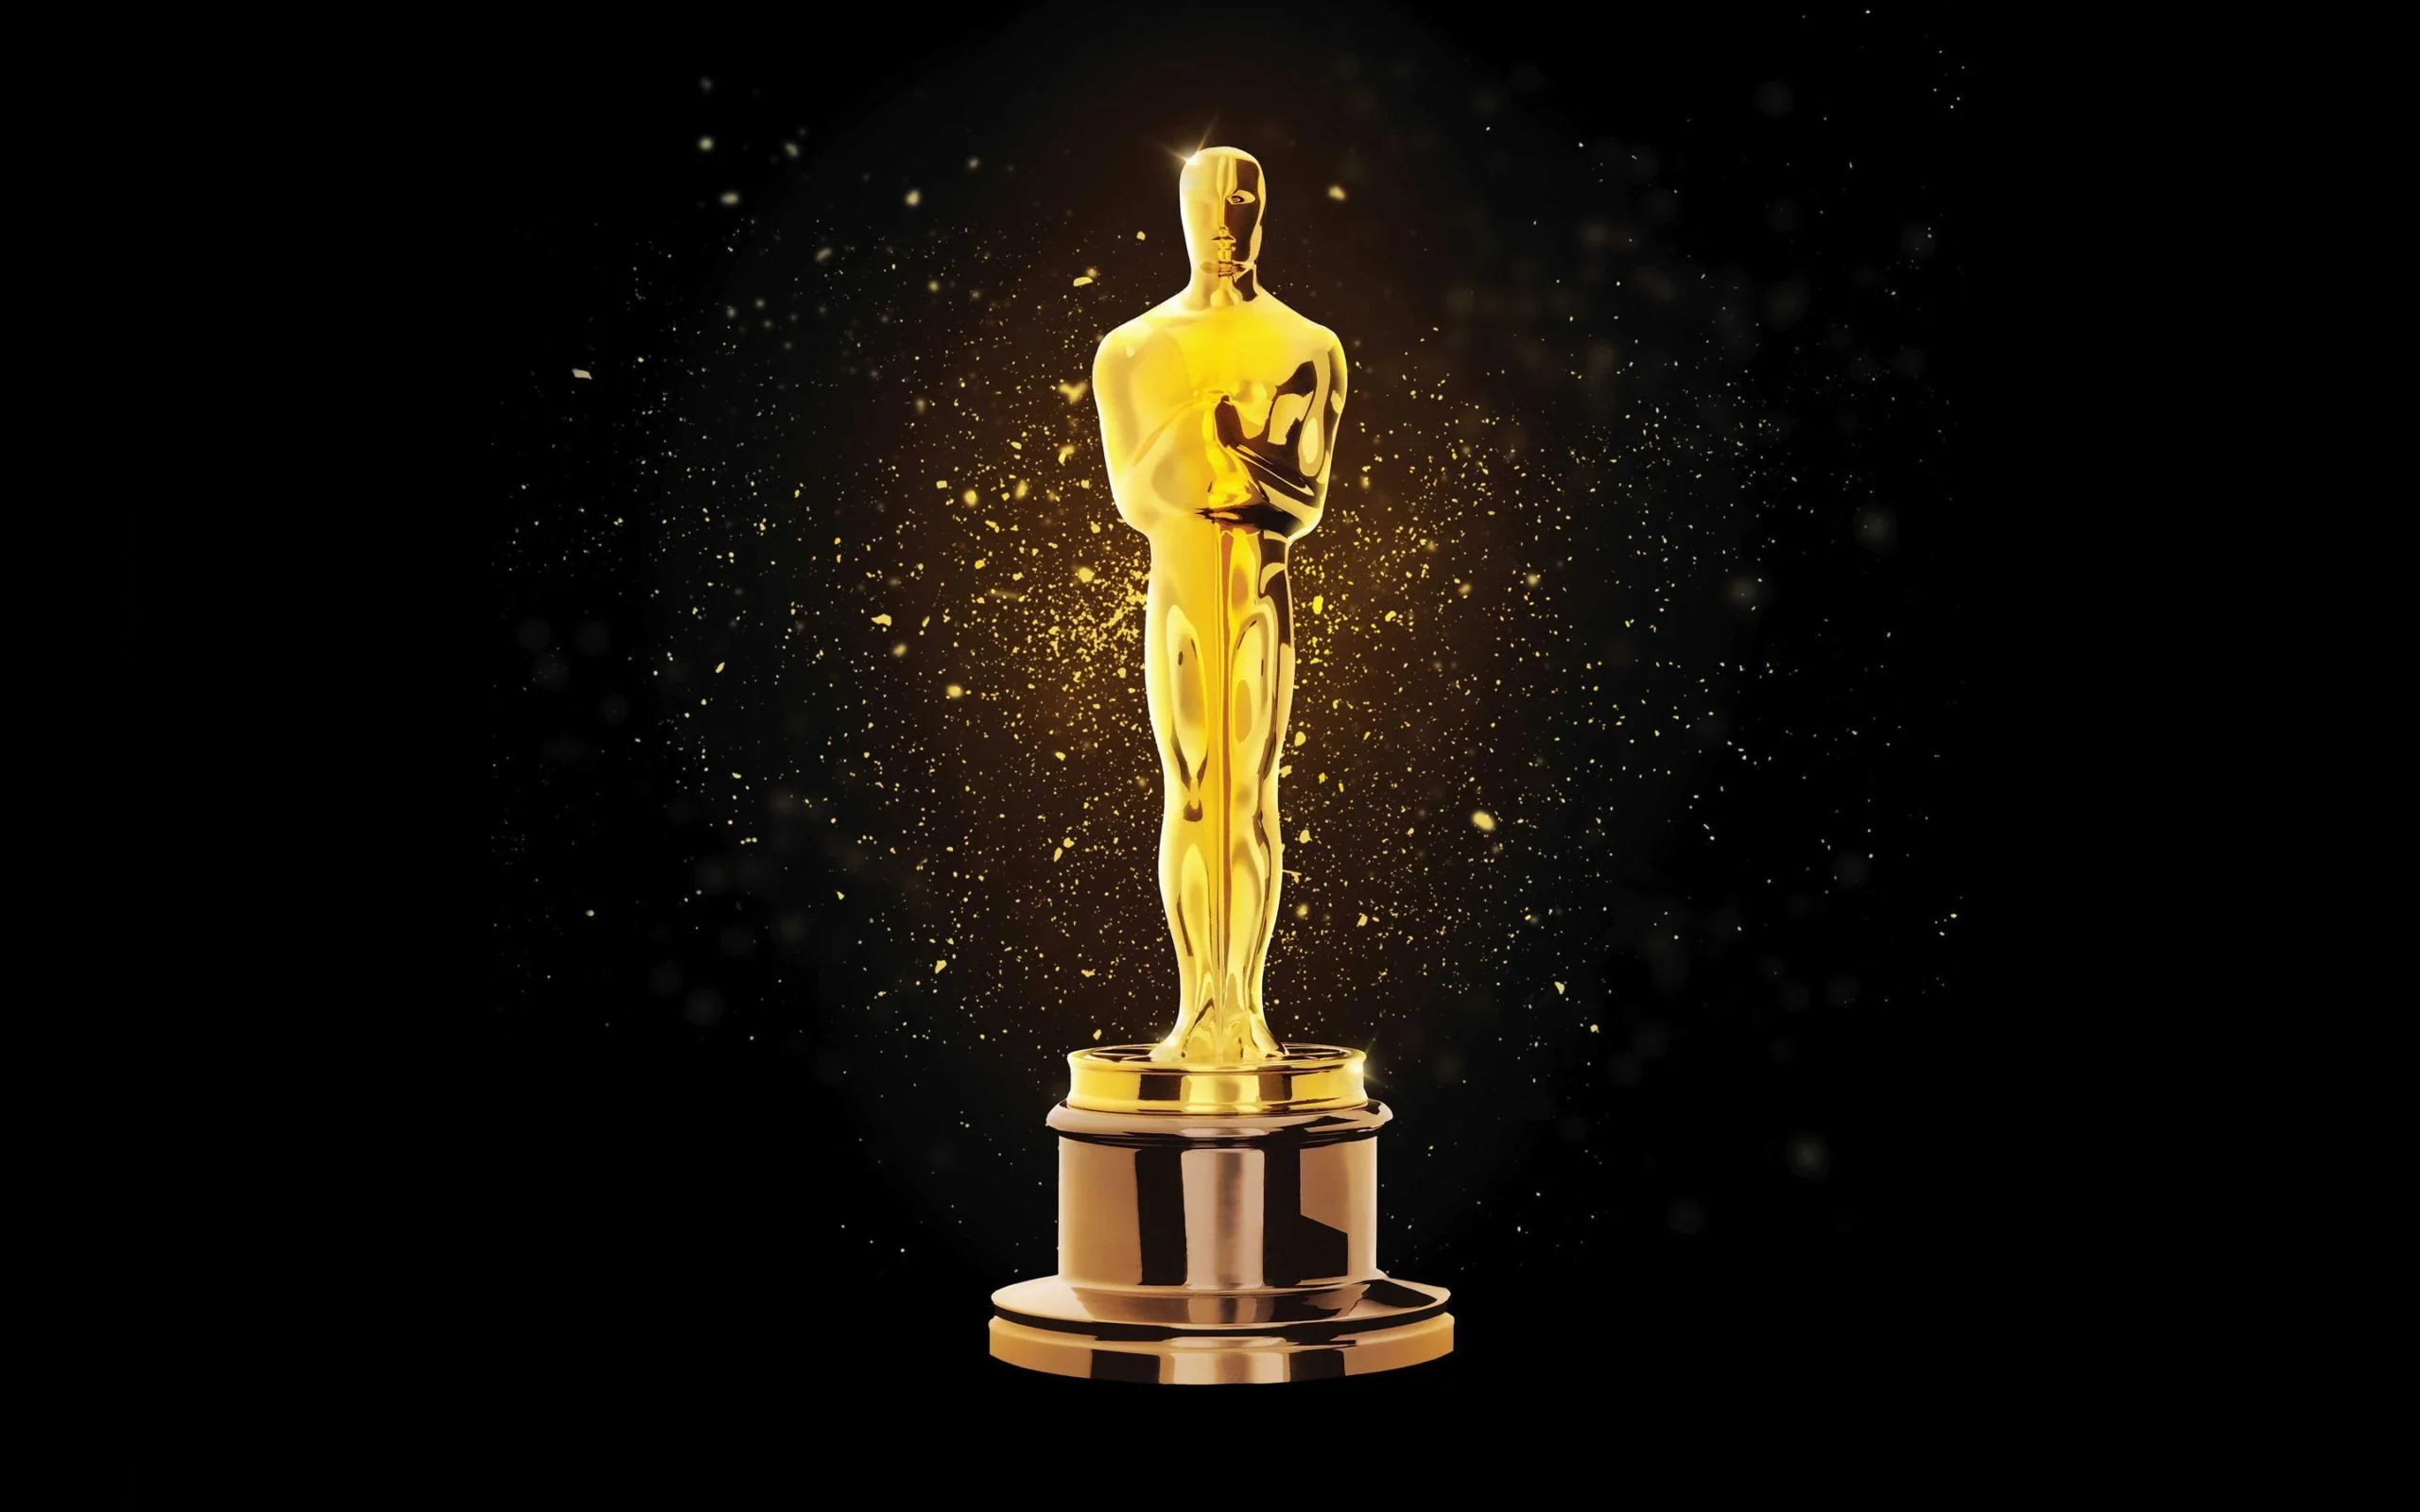 Statua Oscara sa pozadinskim svjetlom, simbolizirajući tajanstvenost i prestiž Akademijine nagrade za zasluge, dok pozadina nagovještava bogatu povijest i različite teorije o podrijetlu imena